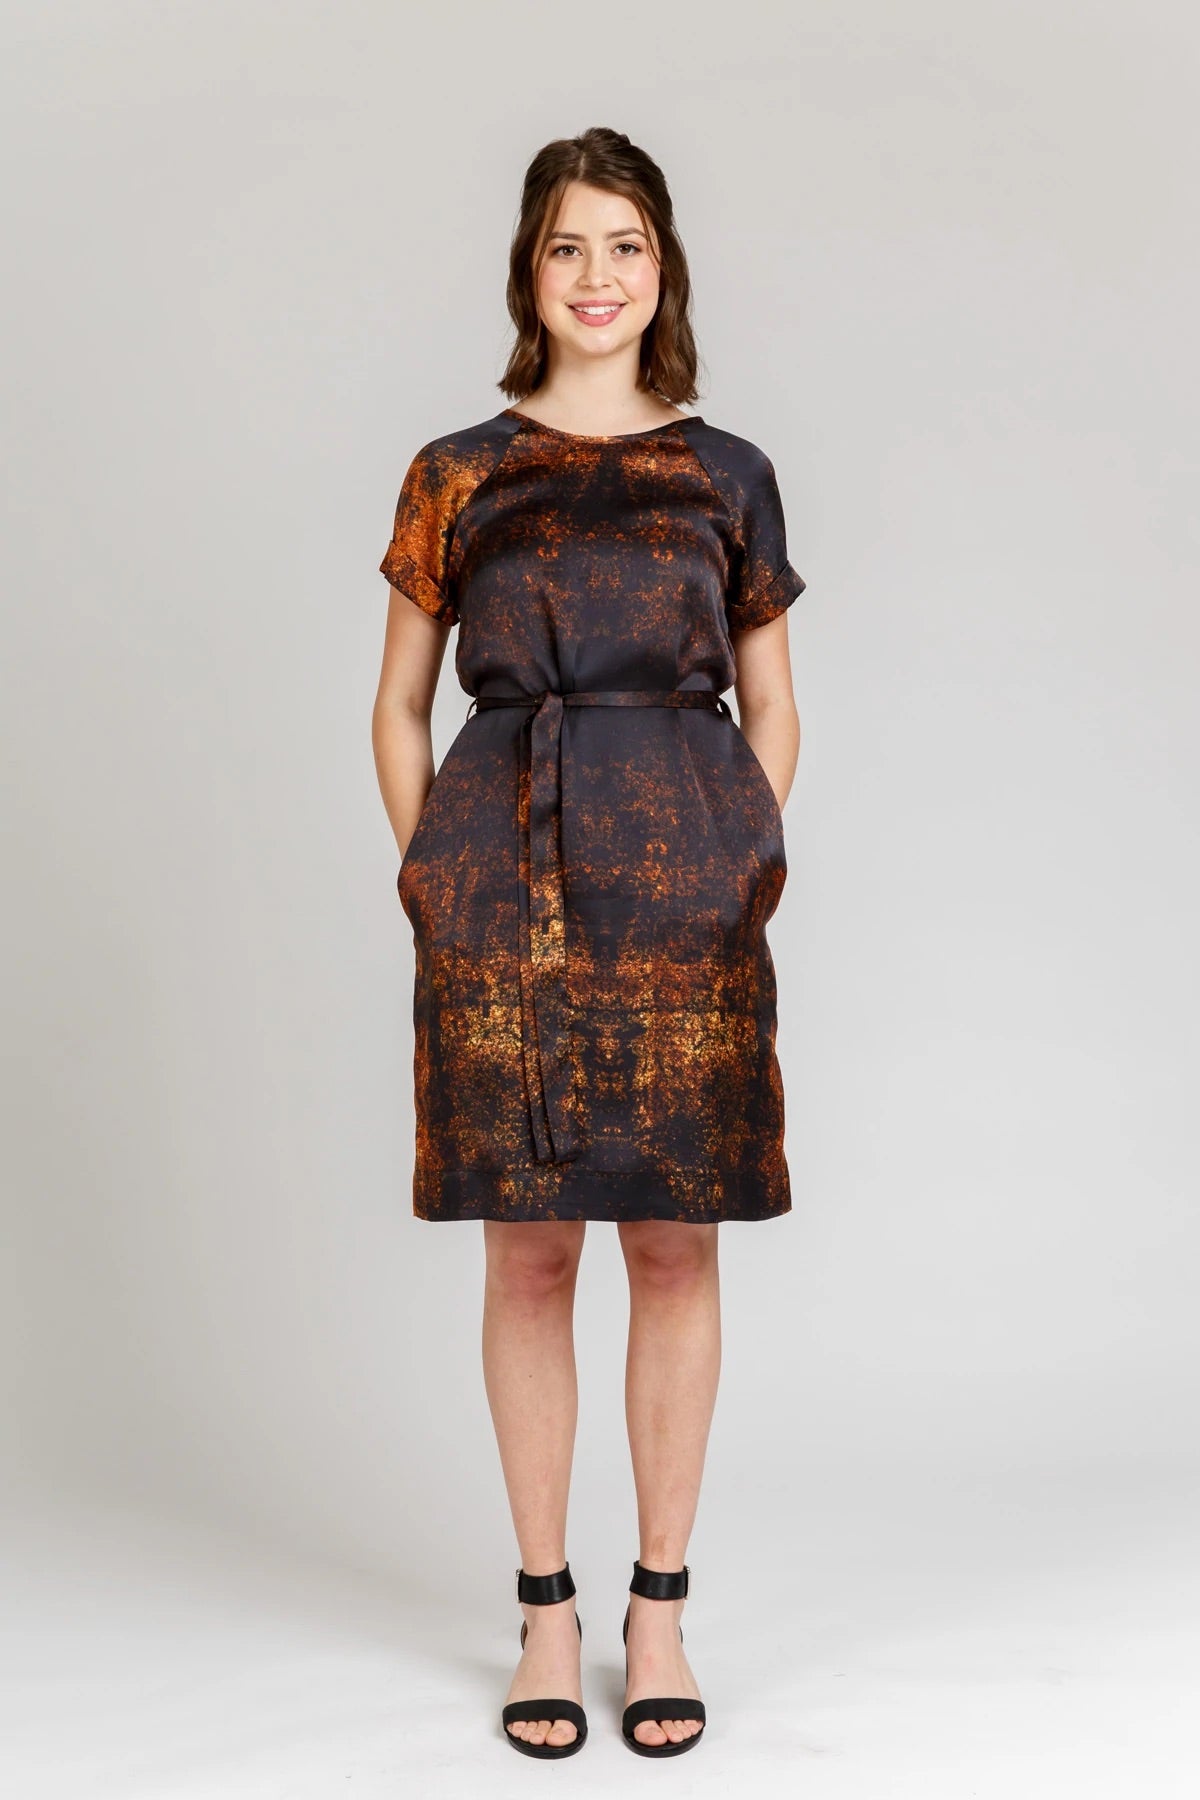 Megan Nielsen - River Dress & Top Sewing Pattern – Lamazi Fabrics